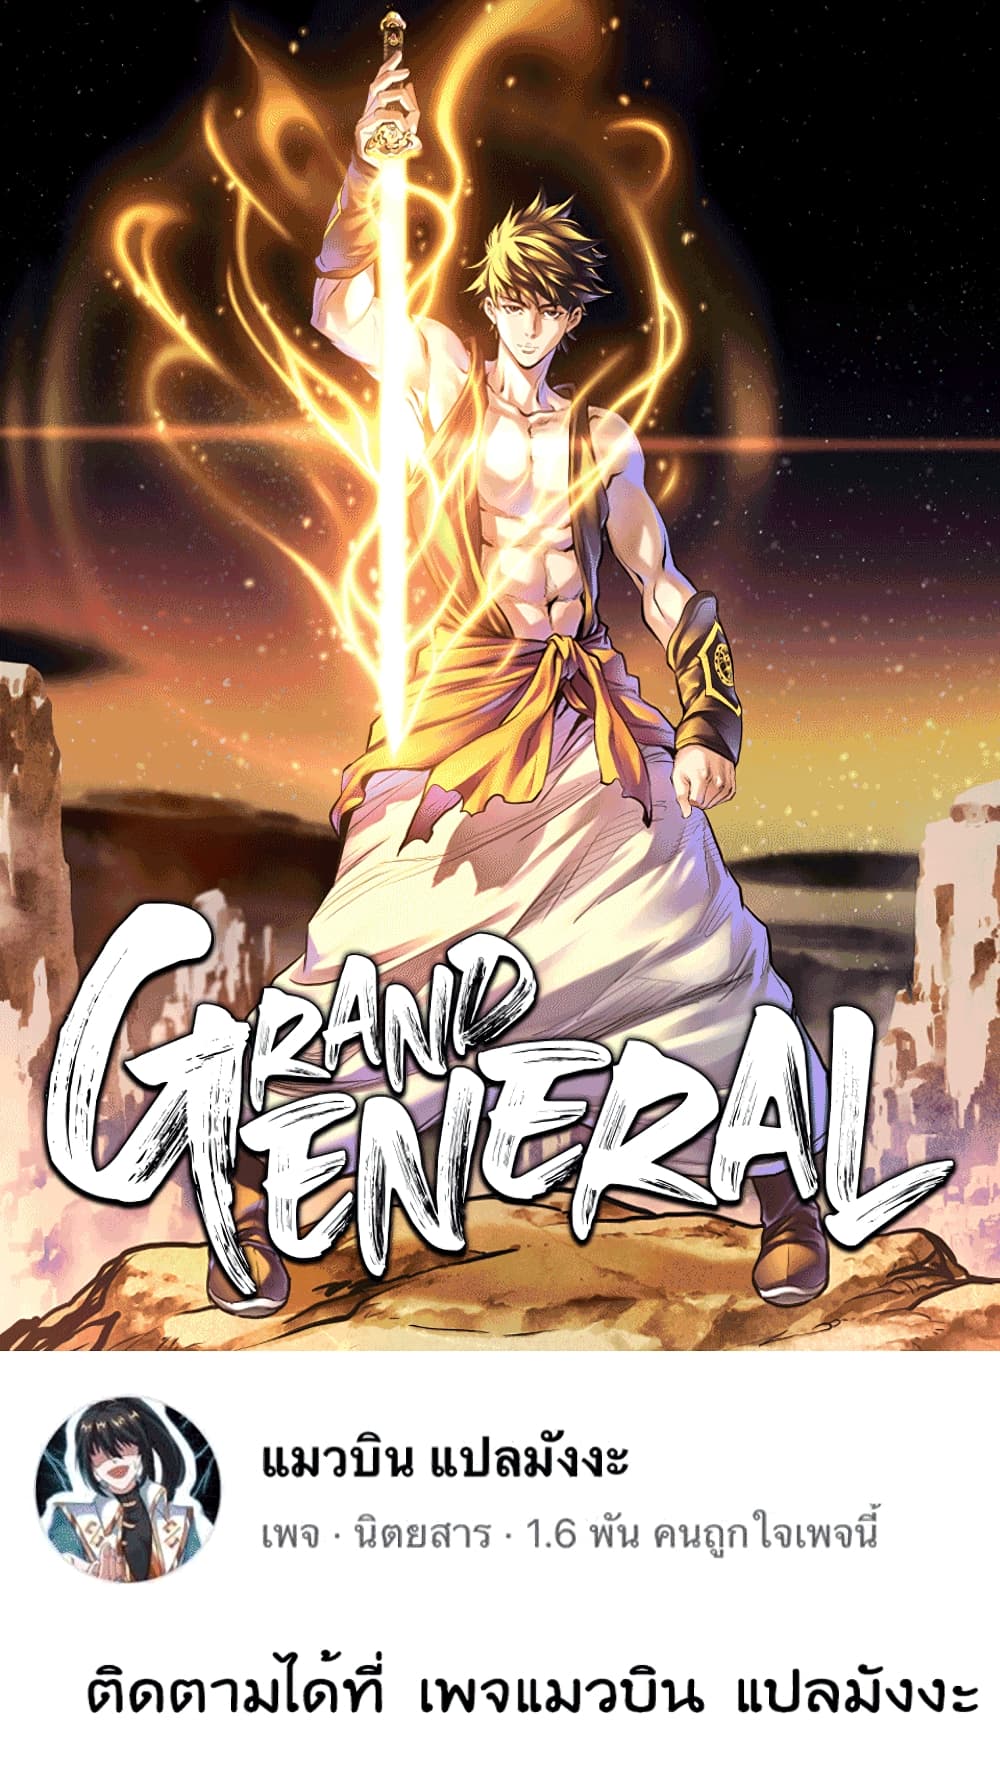 Grand General 1-1